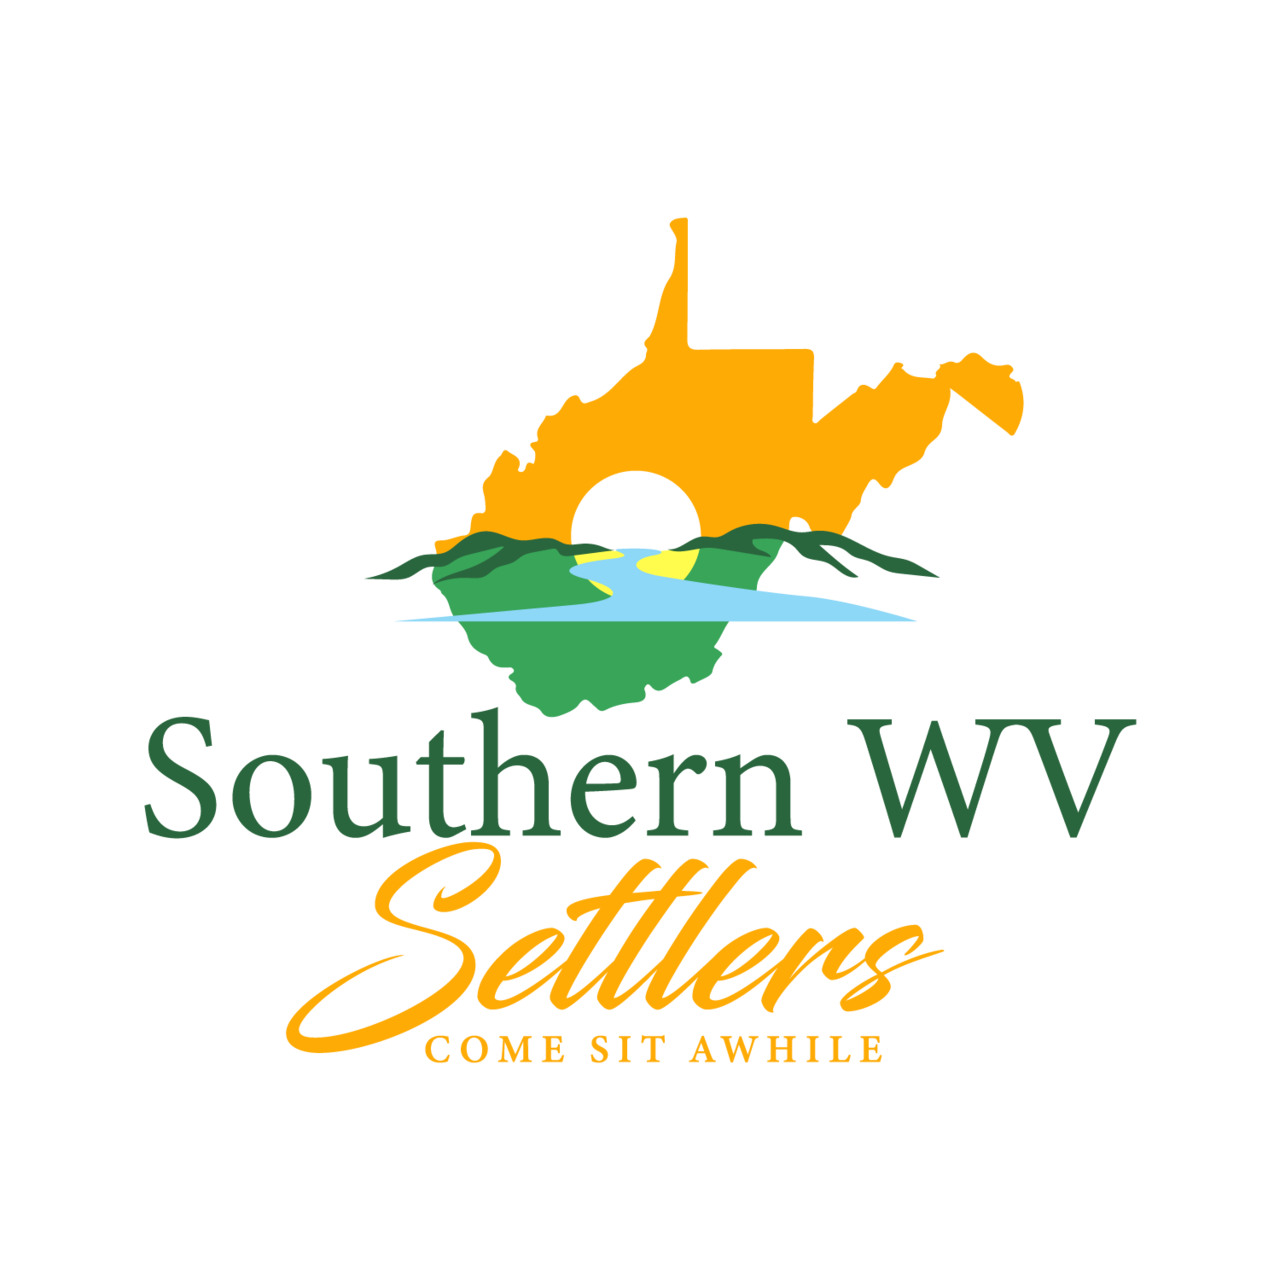 Artwork for Southern WV Settlers Newsletter